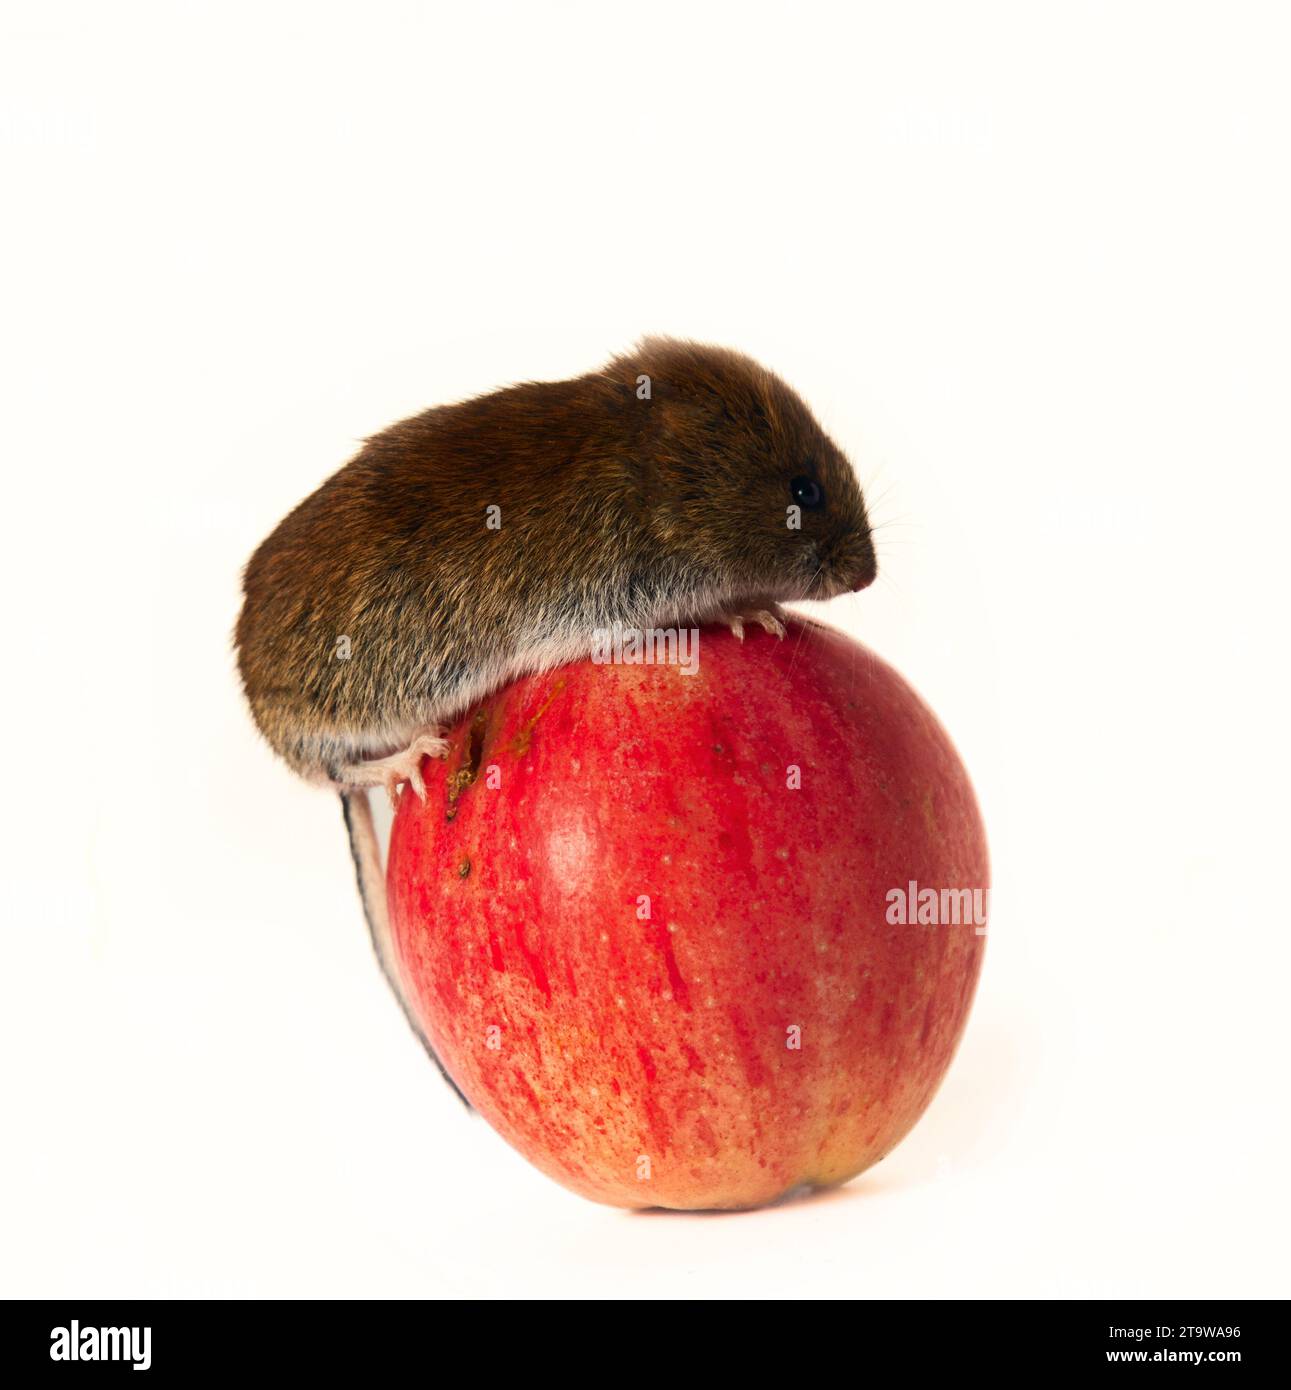 Società di consumo: Il topo (amante delle azioni) rotola una mela enorme del worm. Il principio del consumismo americano di New York quanto più possibile concetto di vendita. Cancella Foto Stock